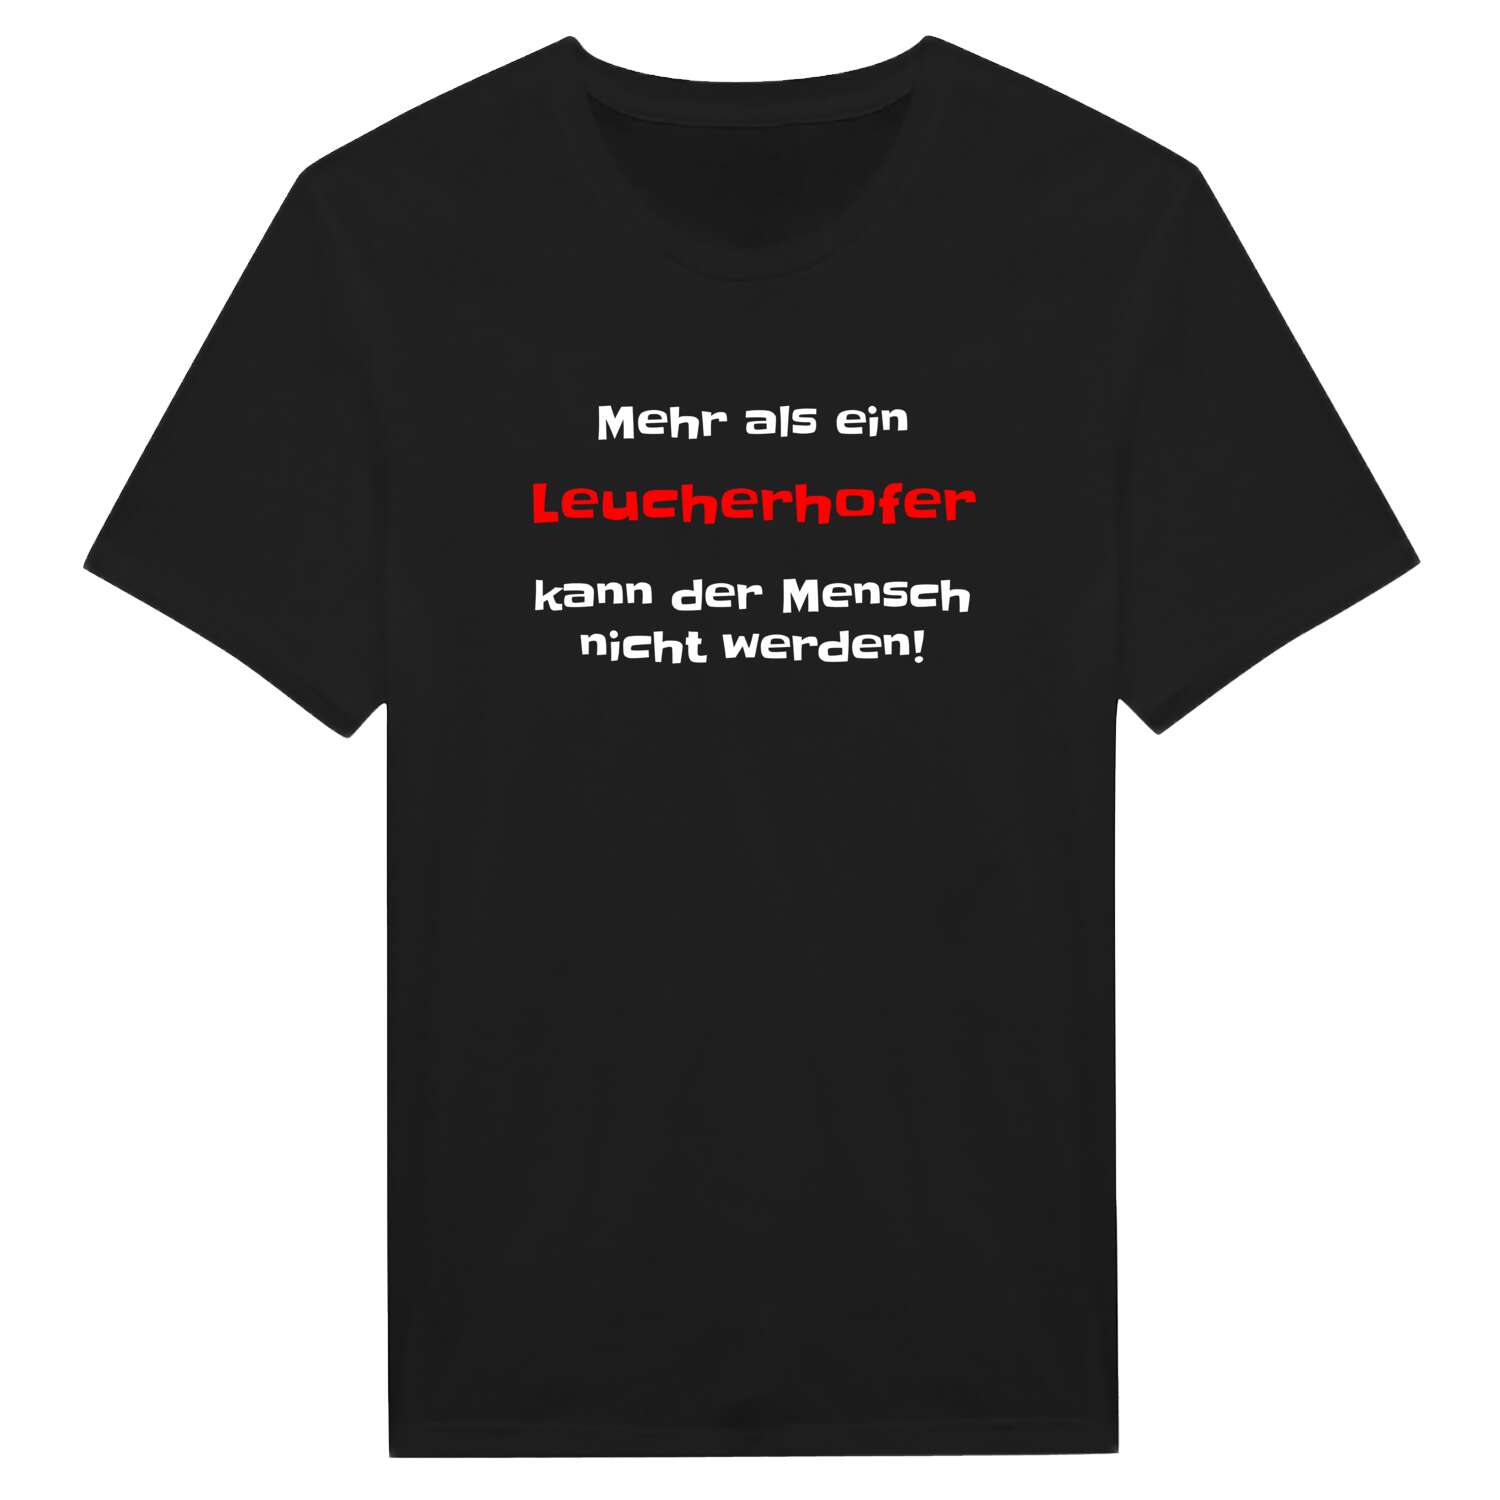 Leucherhof T-Shirt »Mehr als ein«